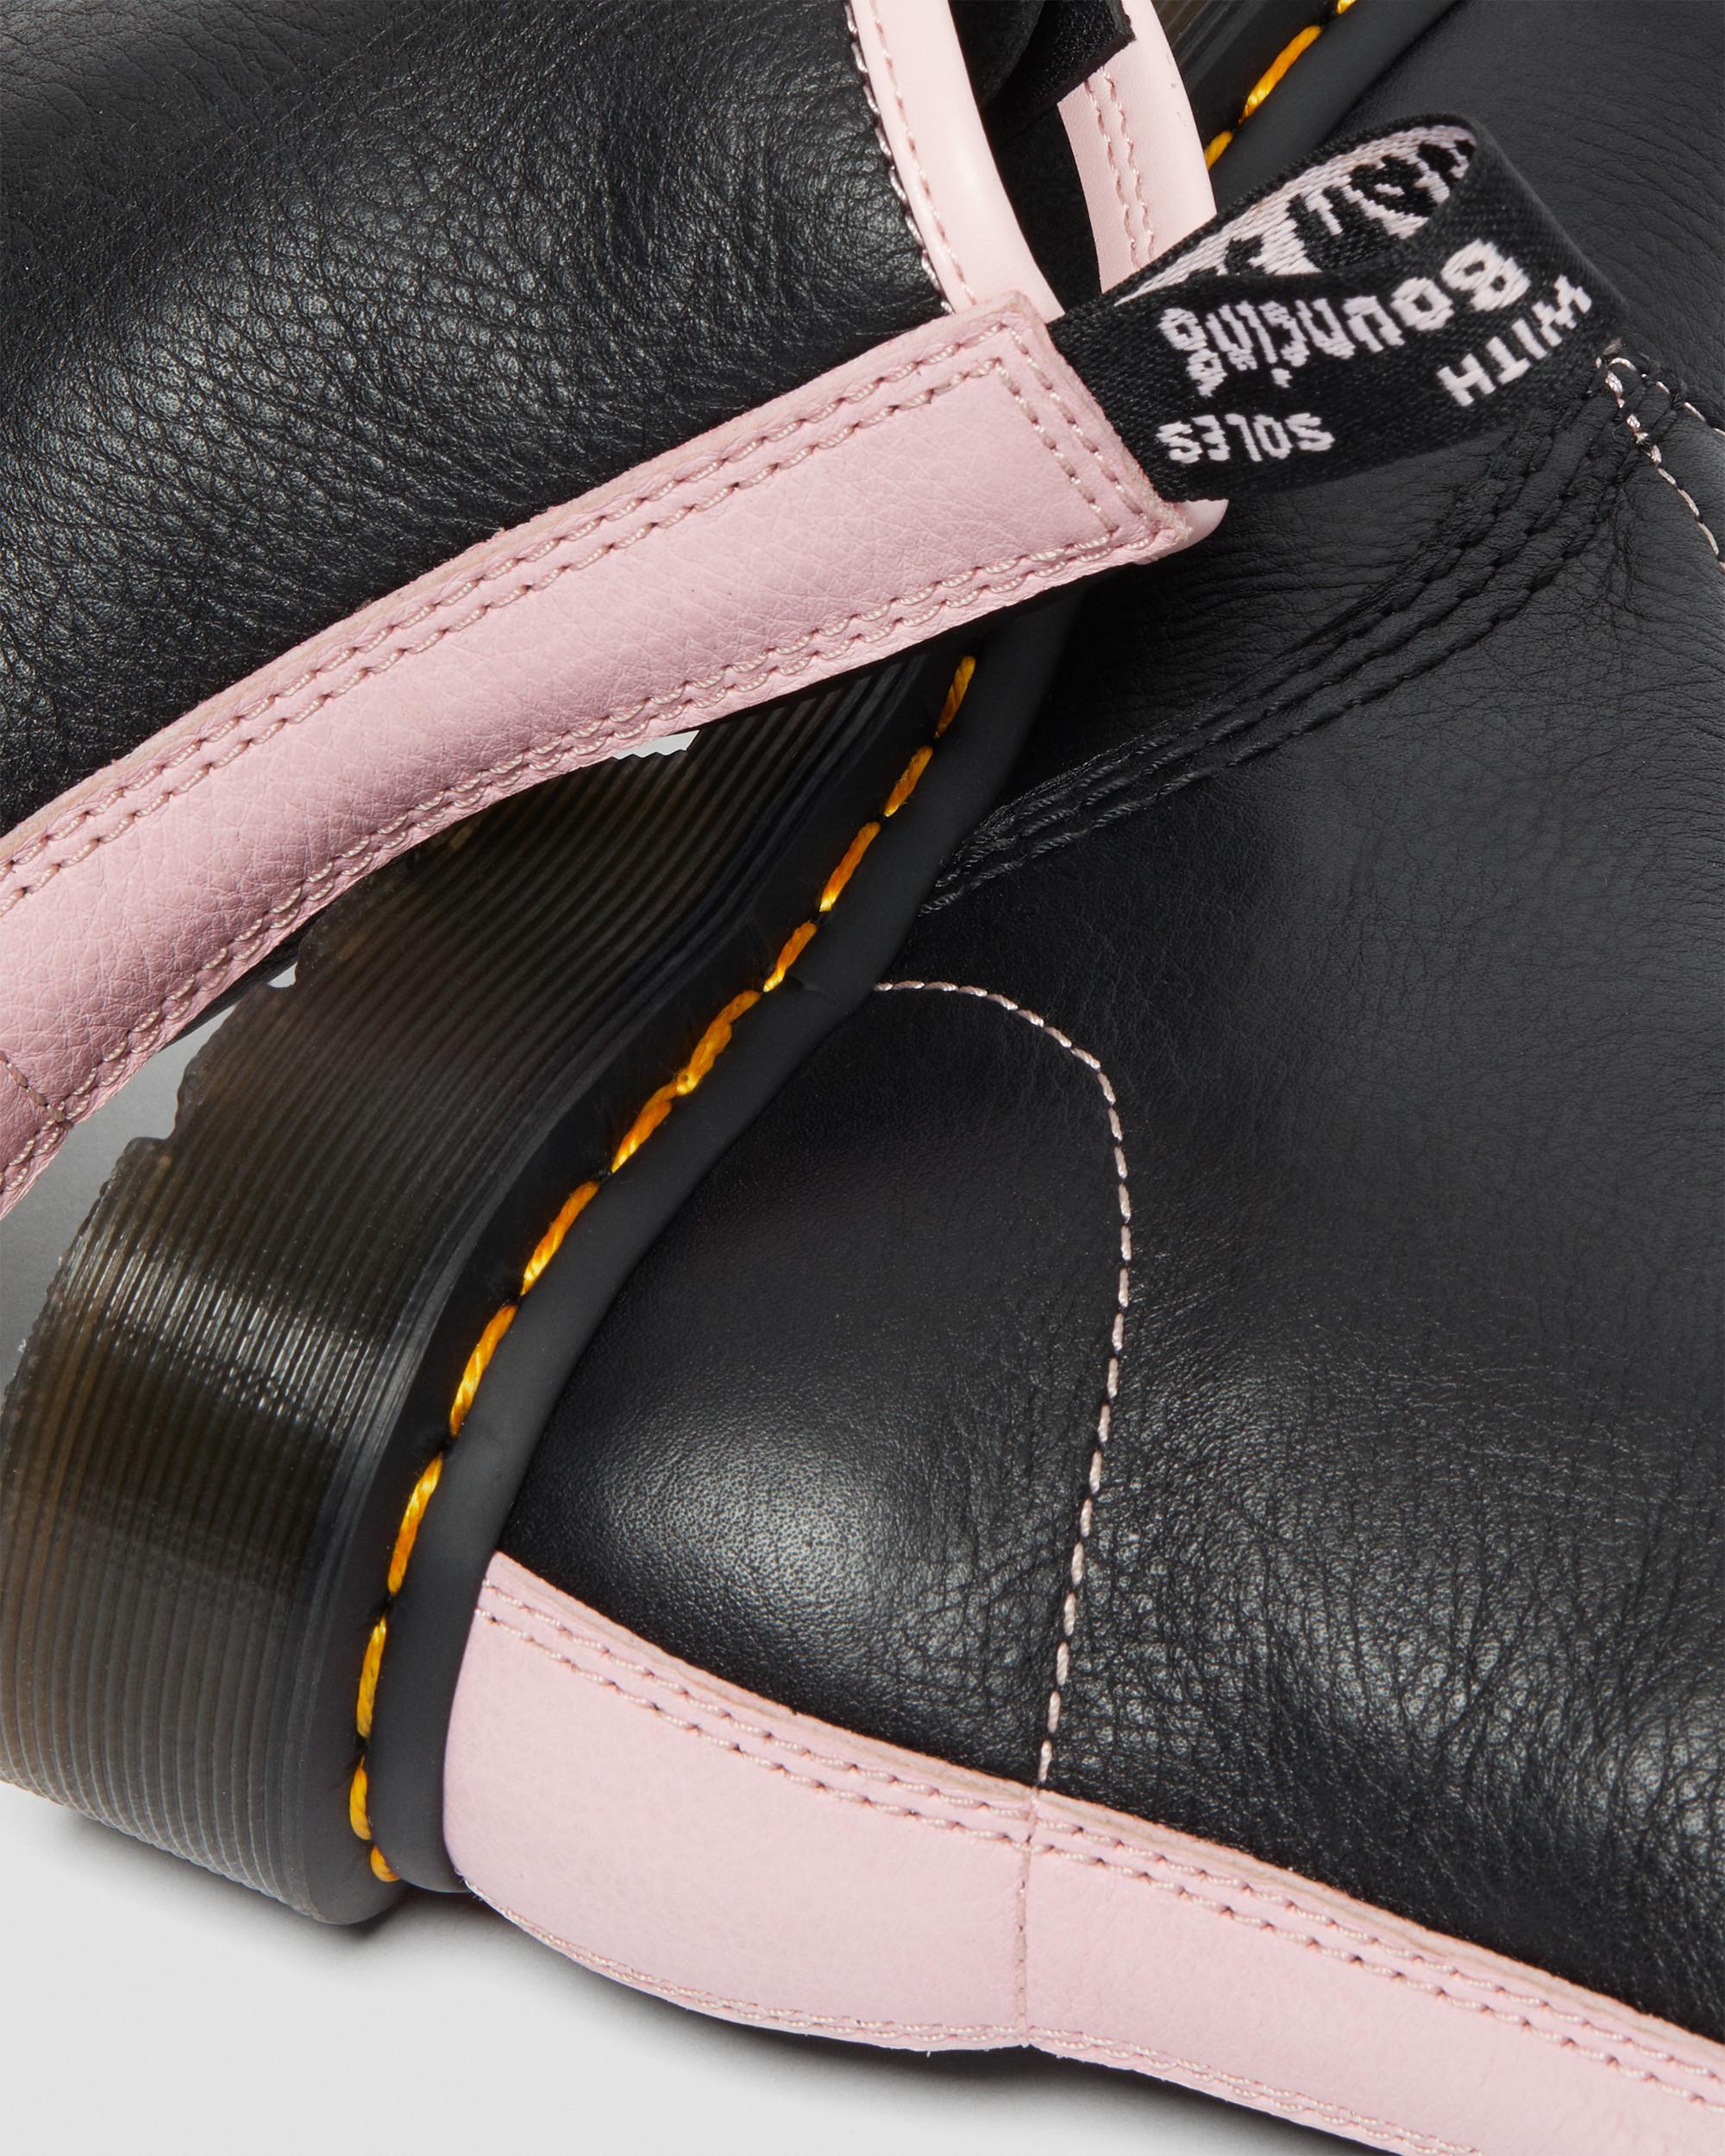 【本物保証安い】Dr.Marten BLACK CHALK PINK バレンタイン 限定 UK5 靴